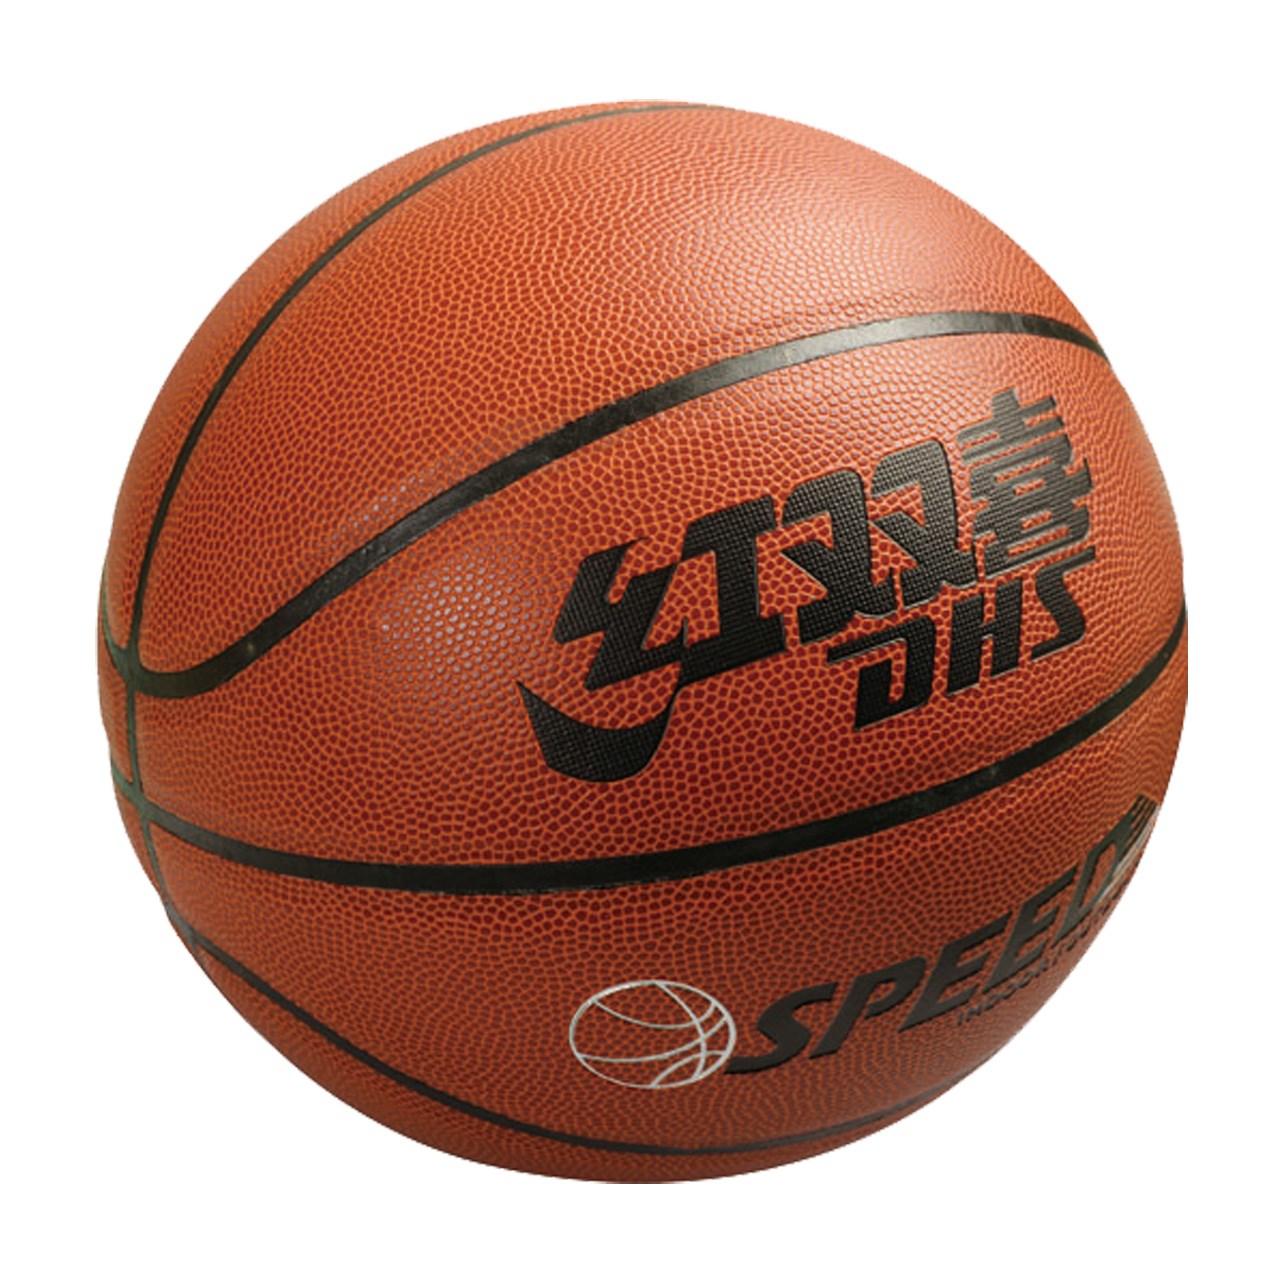 توپ بسکتبال دی اچ اس مدل FB001